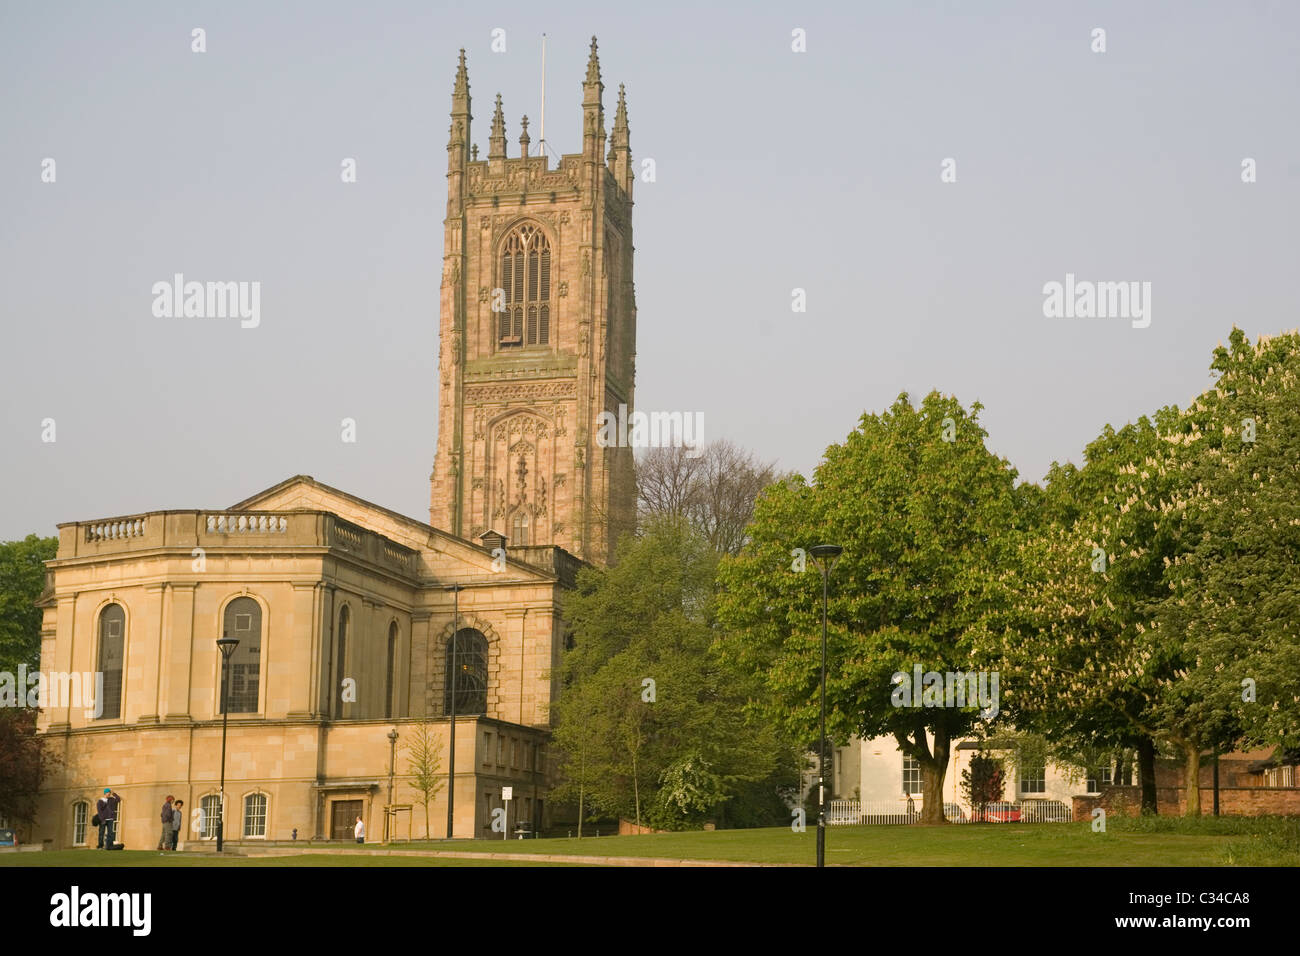 La cathédrale de Derby en Angleterre Banque D'Images